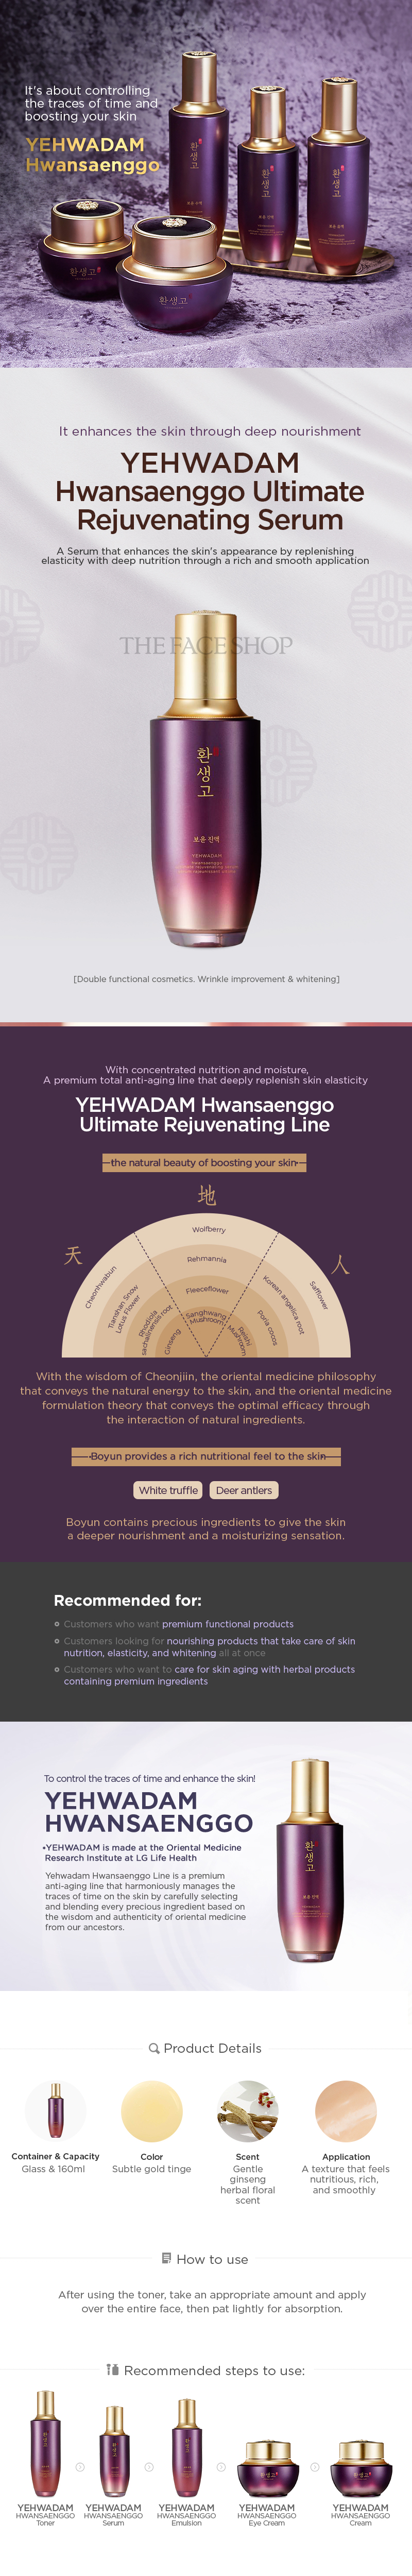 Yehwadam Hwansaenggo Ultimate Rejuvenating Serum